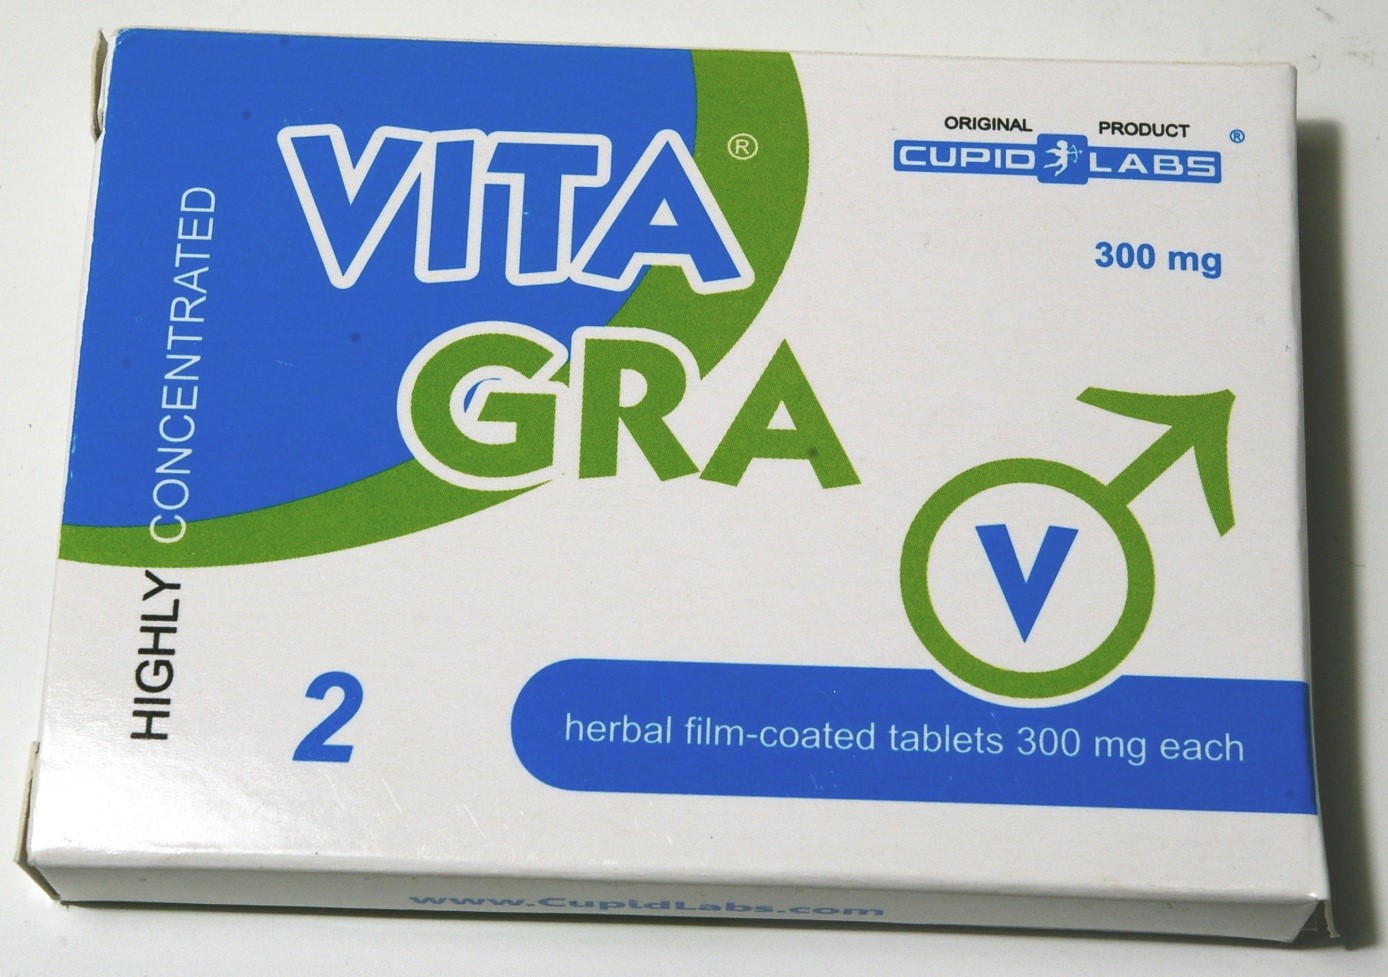 Image of the illigal product: Vitagra